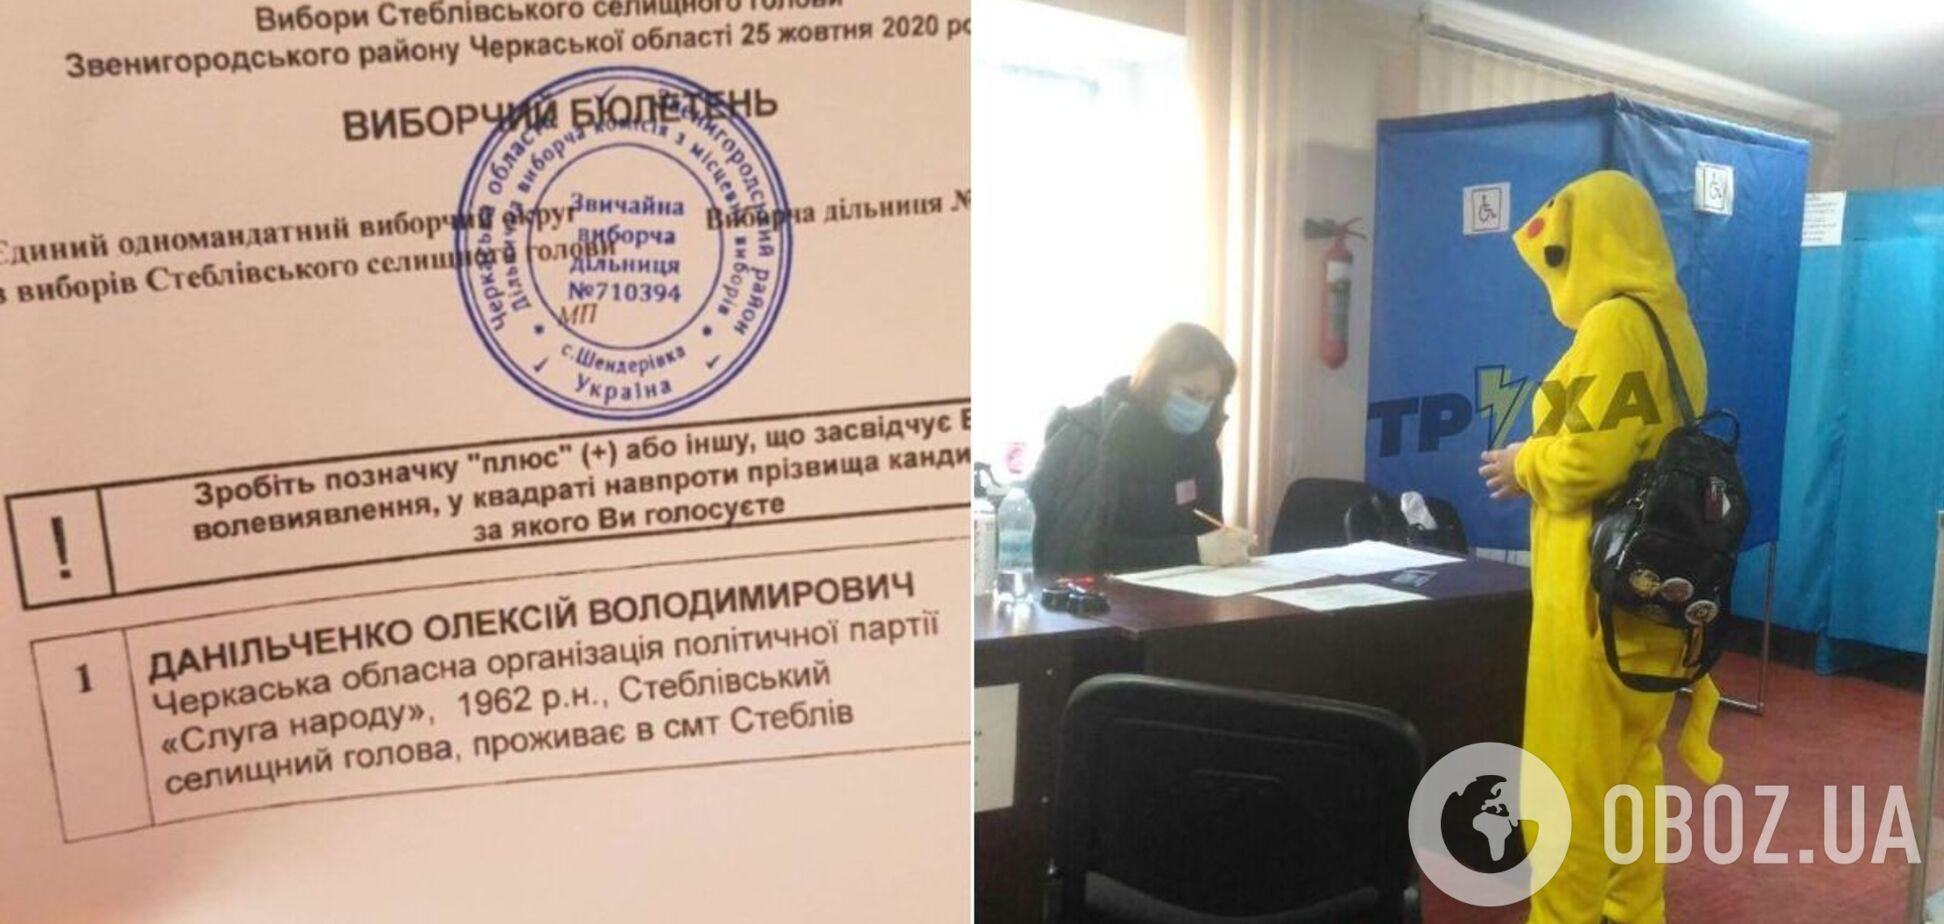 Избирательные комиссии 'отличились' на местных выборах в Украине